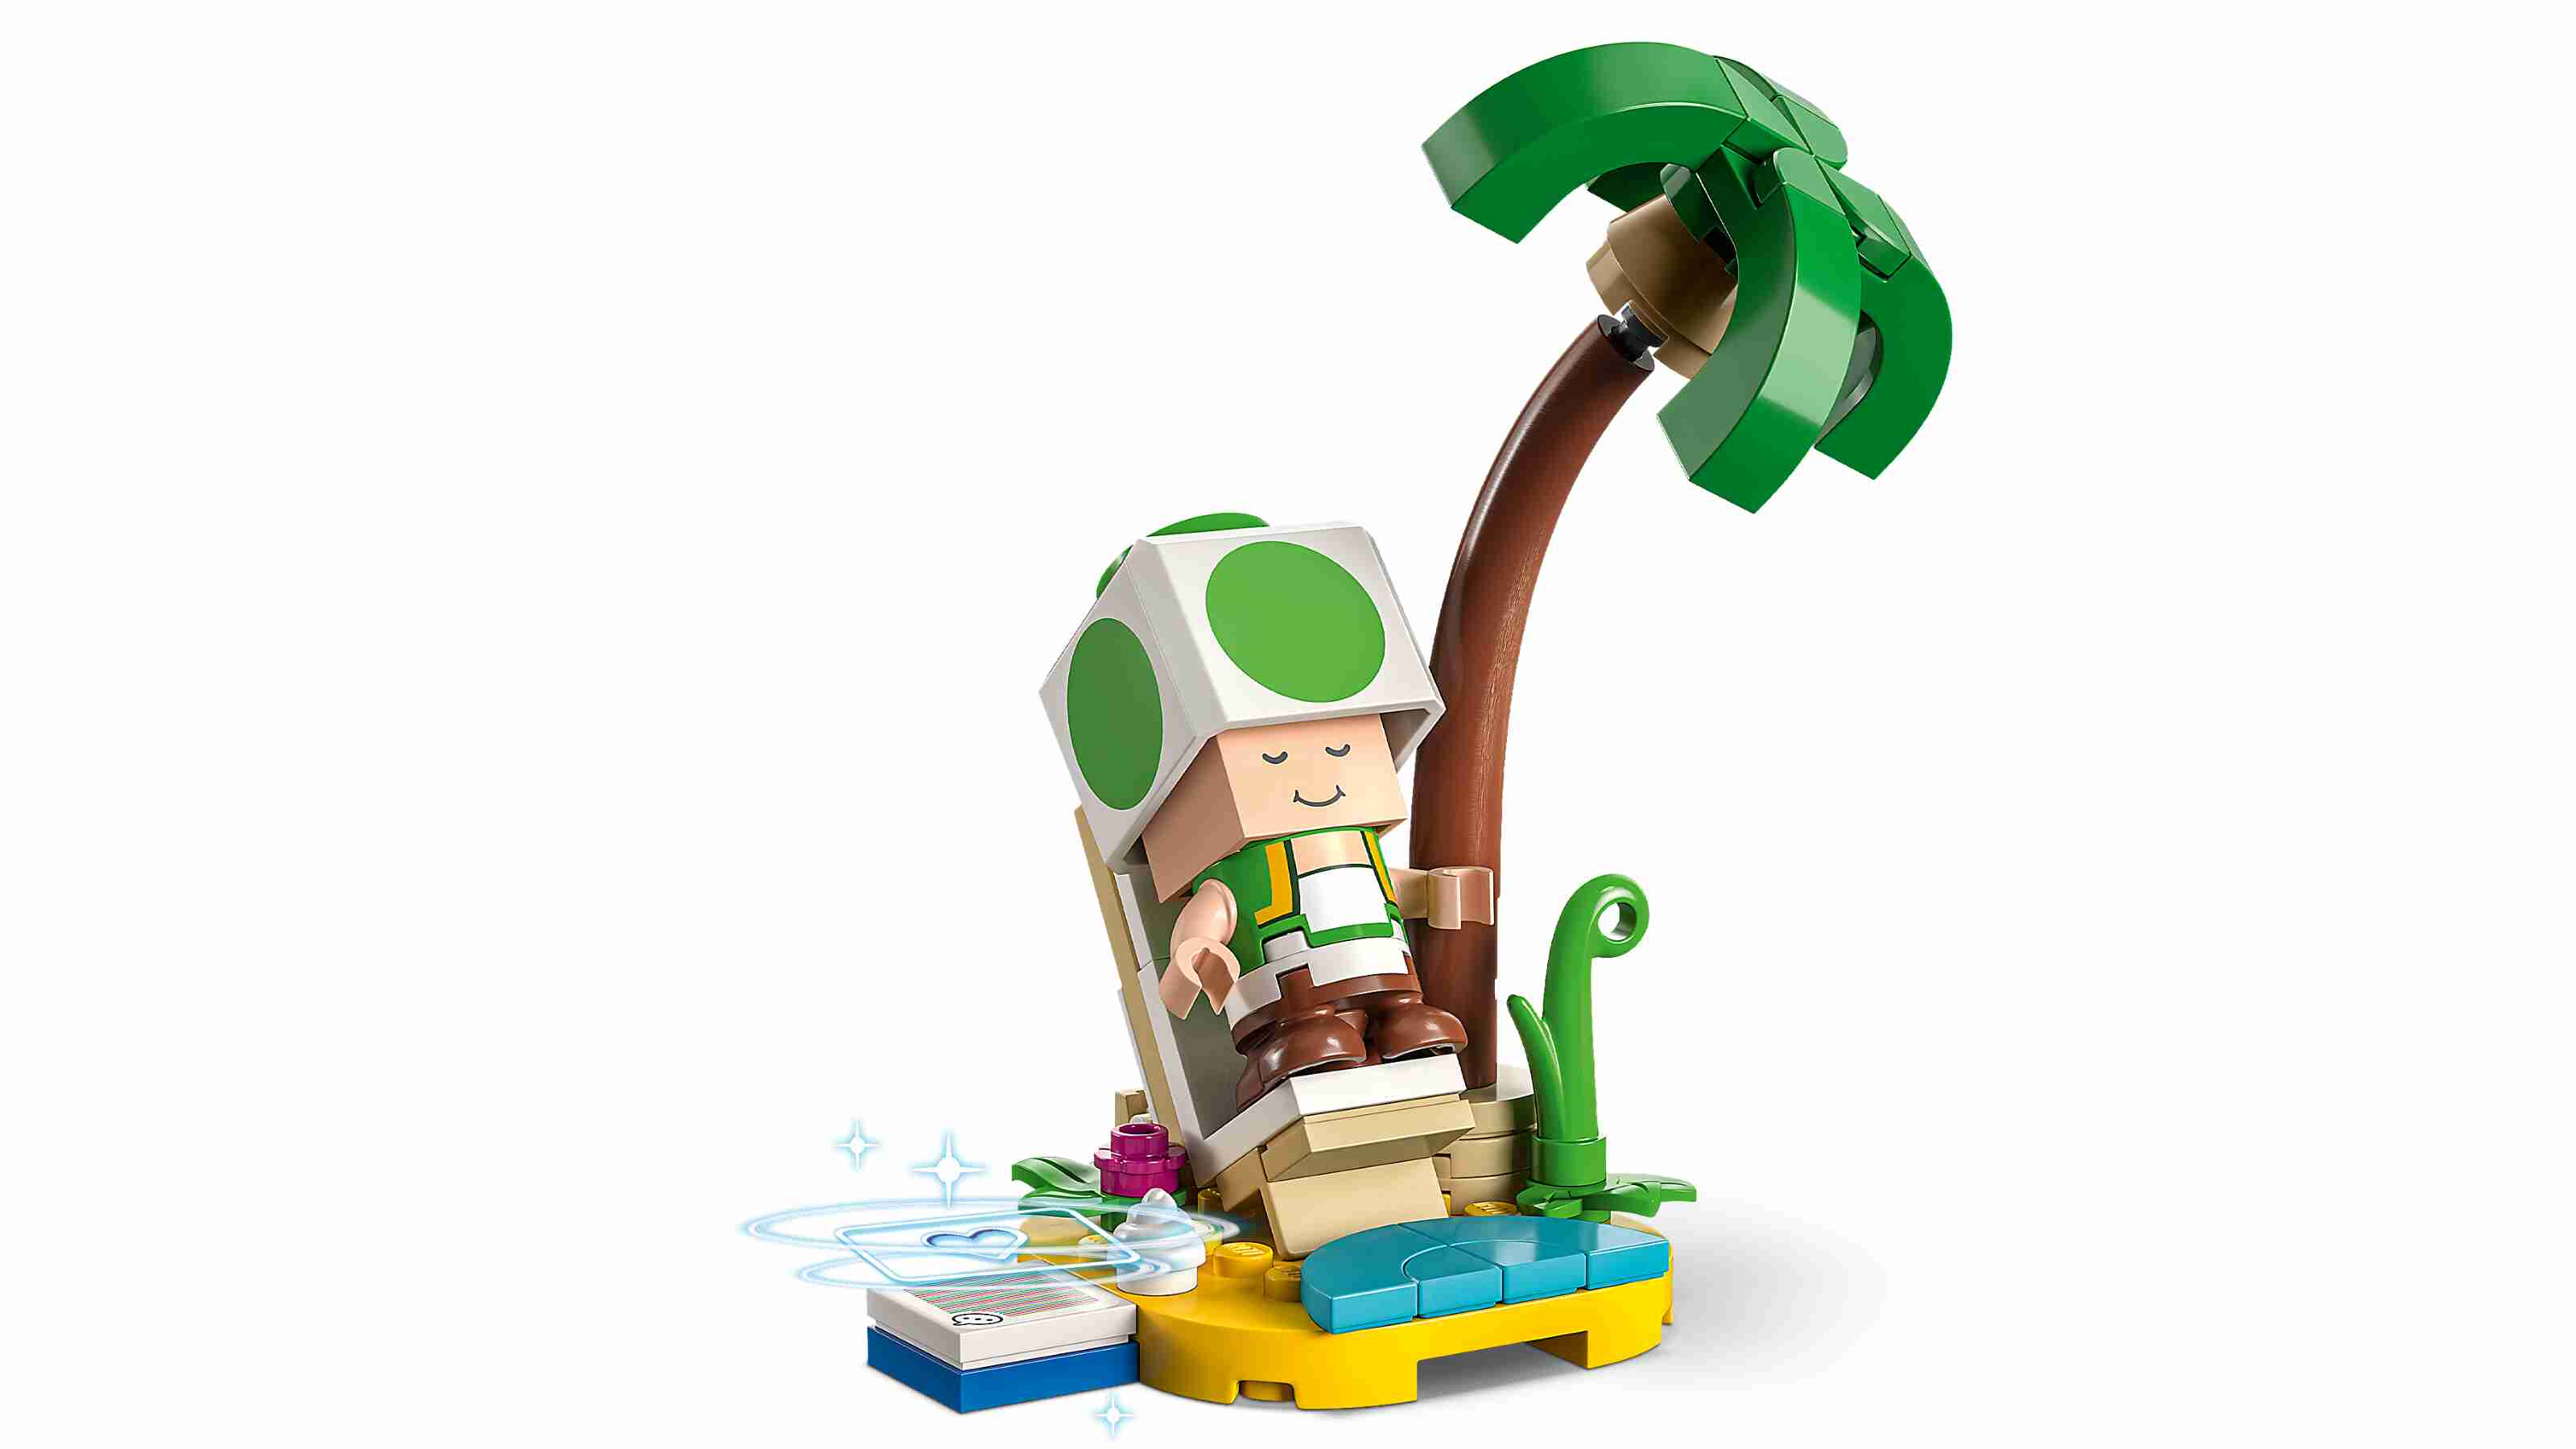 LEGO 71413 Super Mario Mario-Charaktere-Serie 6, Überraschungstüte